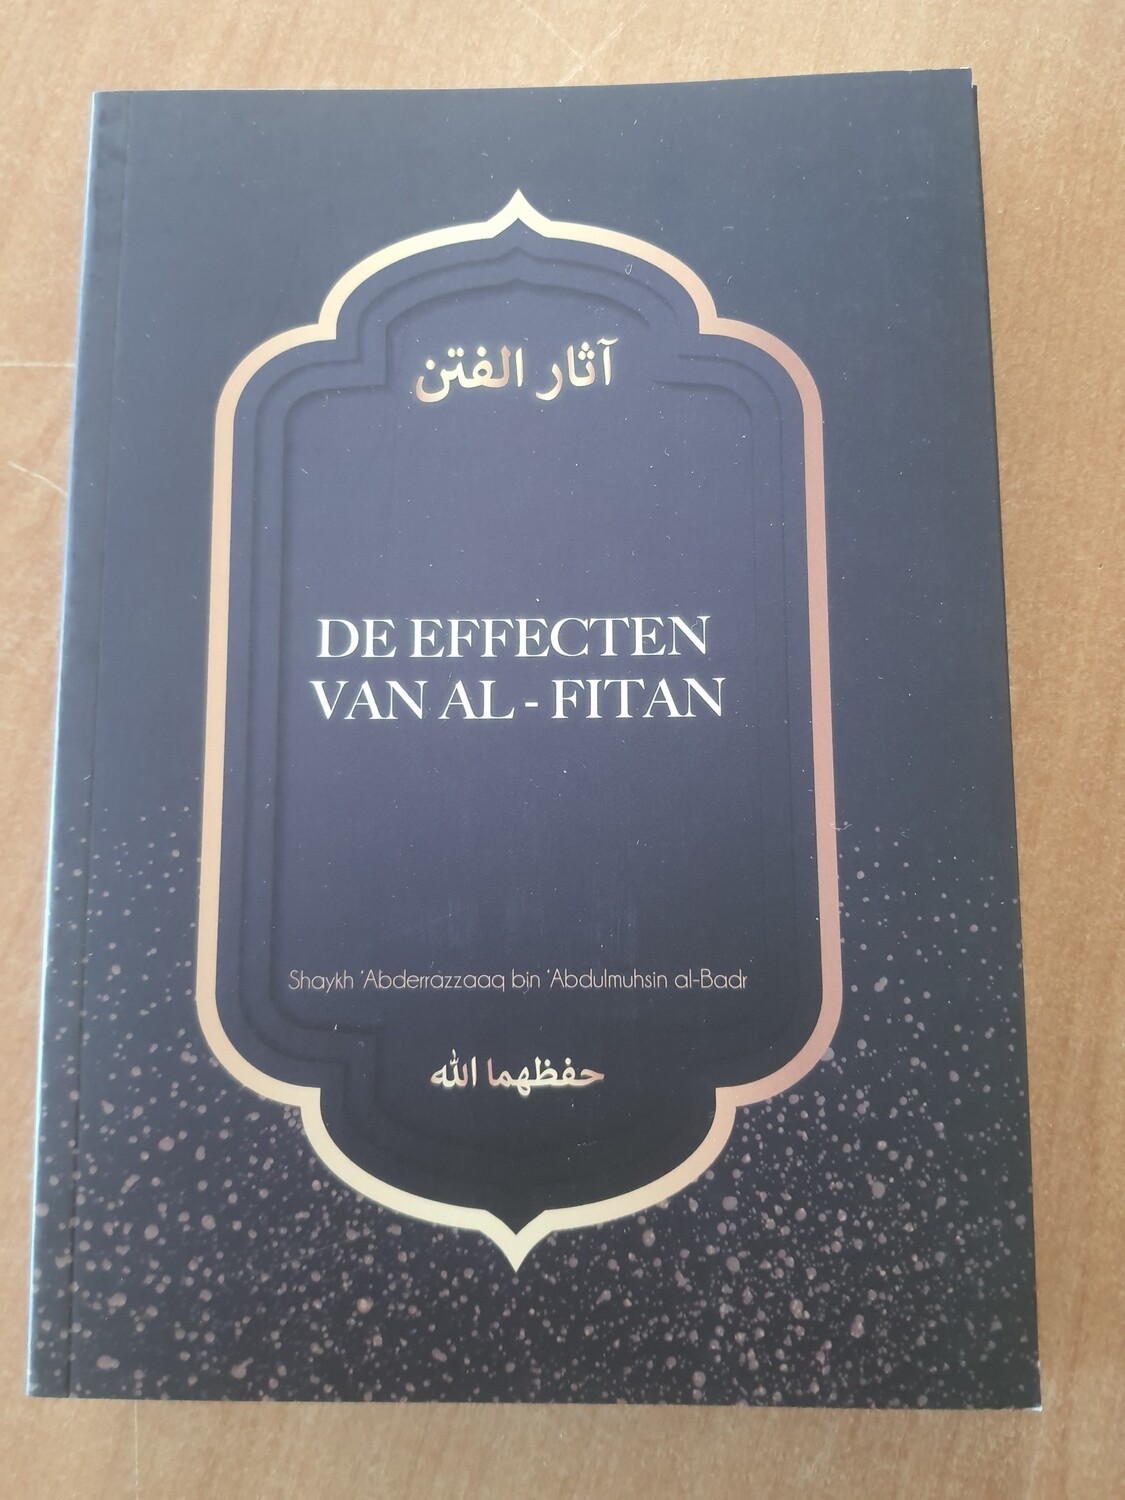 De effecten van Al- Fitan